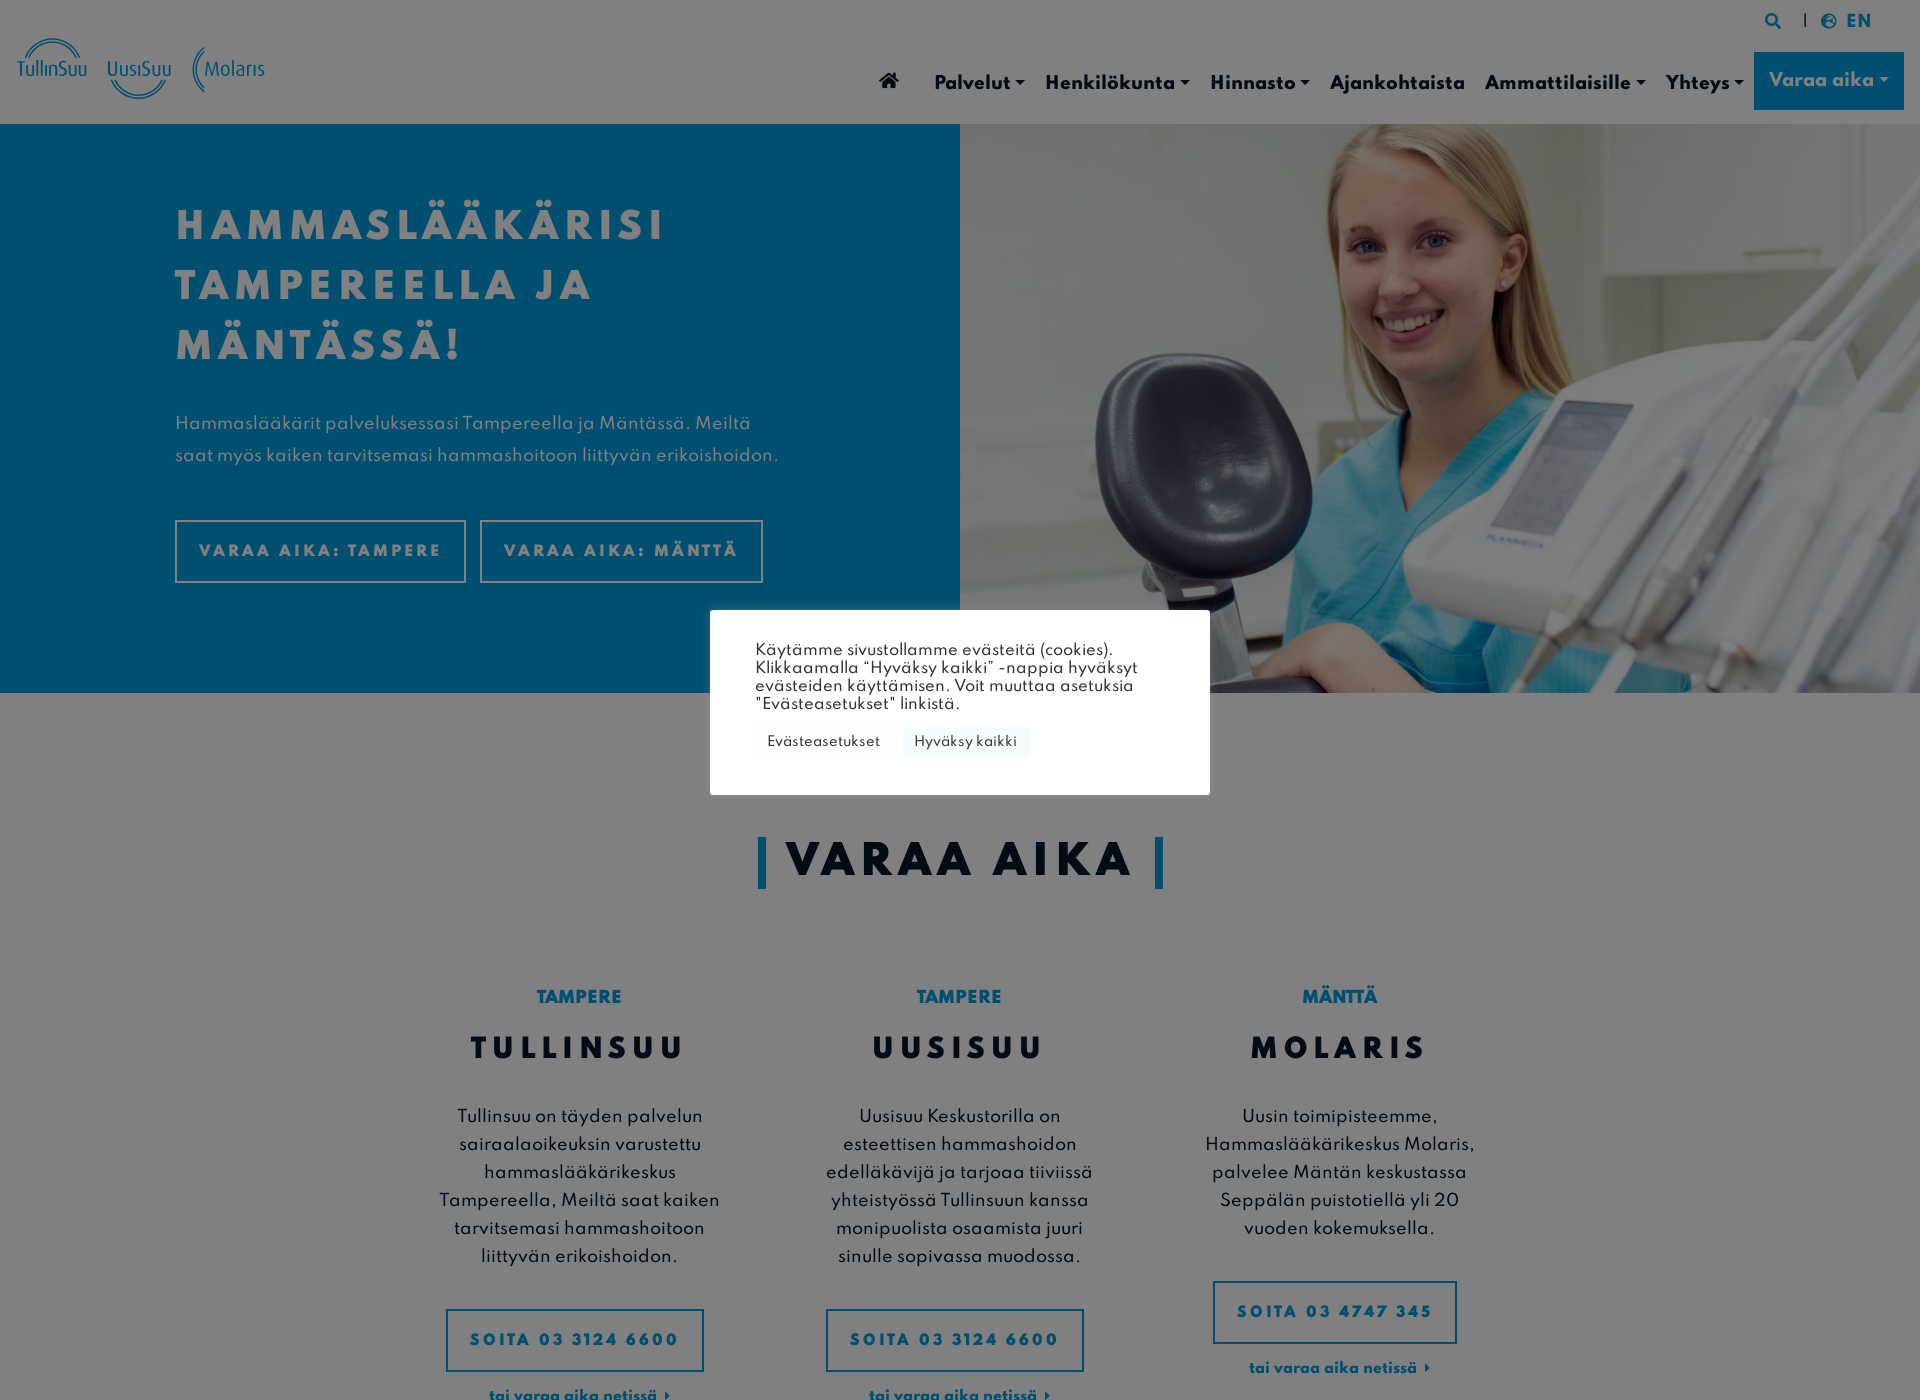 Näyttökuva hammasraudat.fi